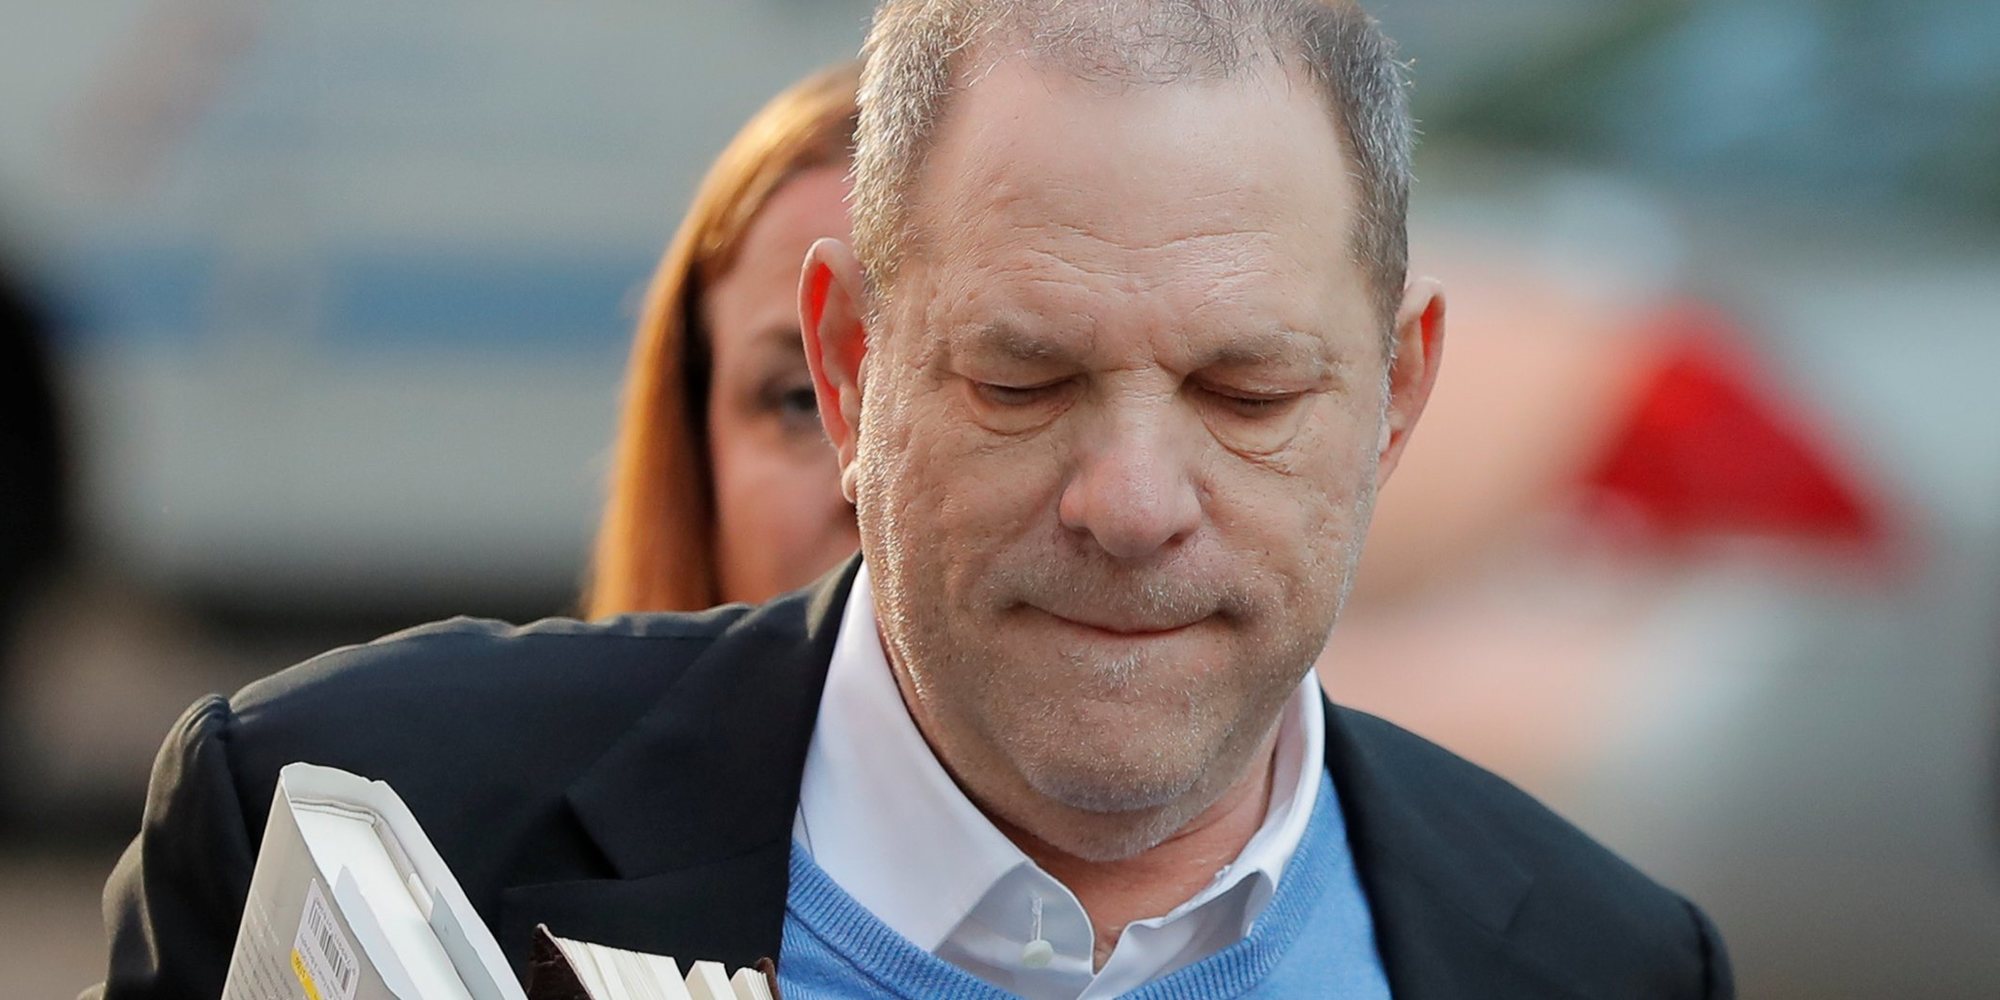 Tres nuevos cargos por abuso sexual contra Harvey Weinstein podrían llevarle a cadena perpetua